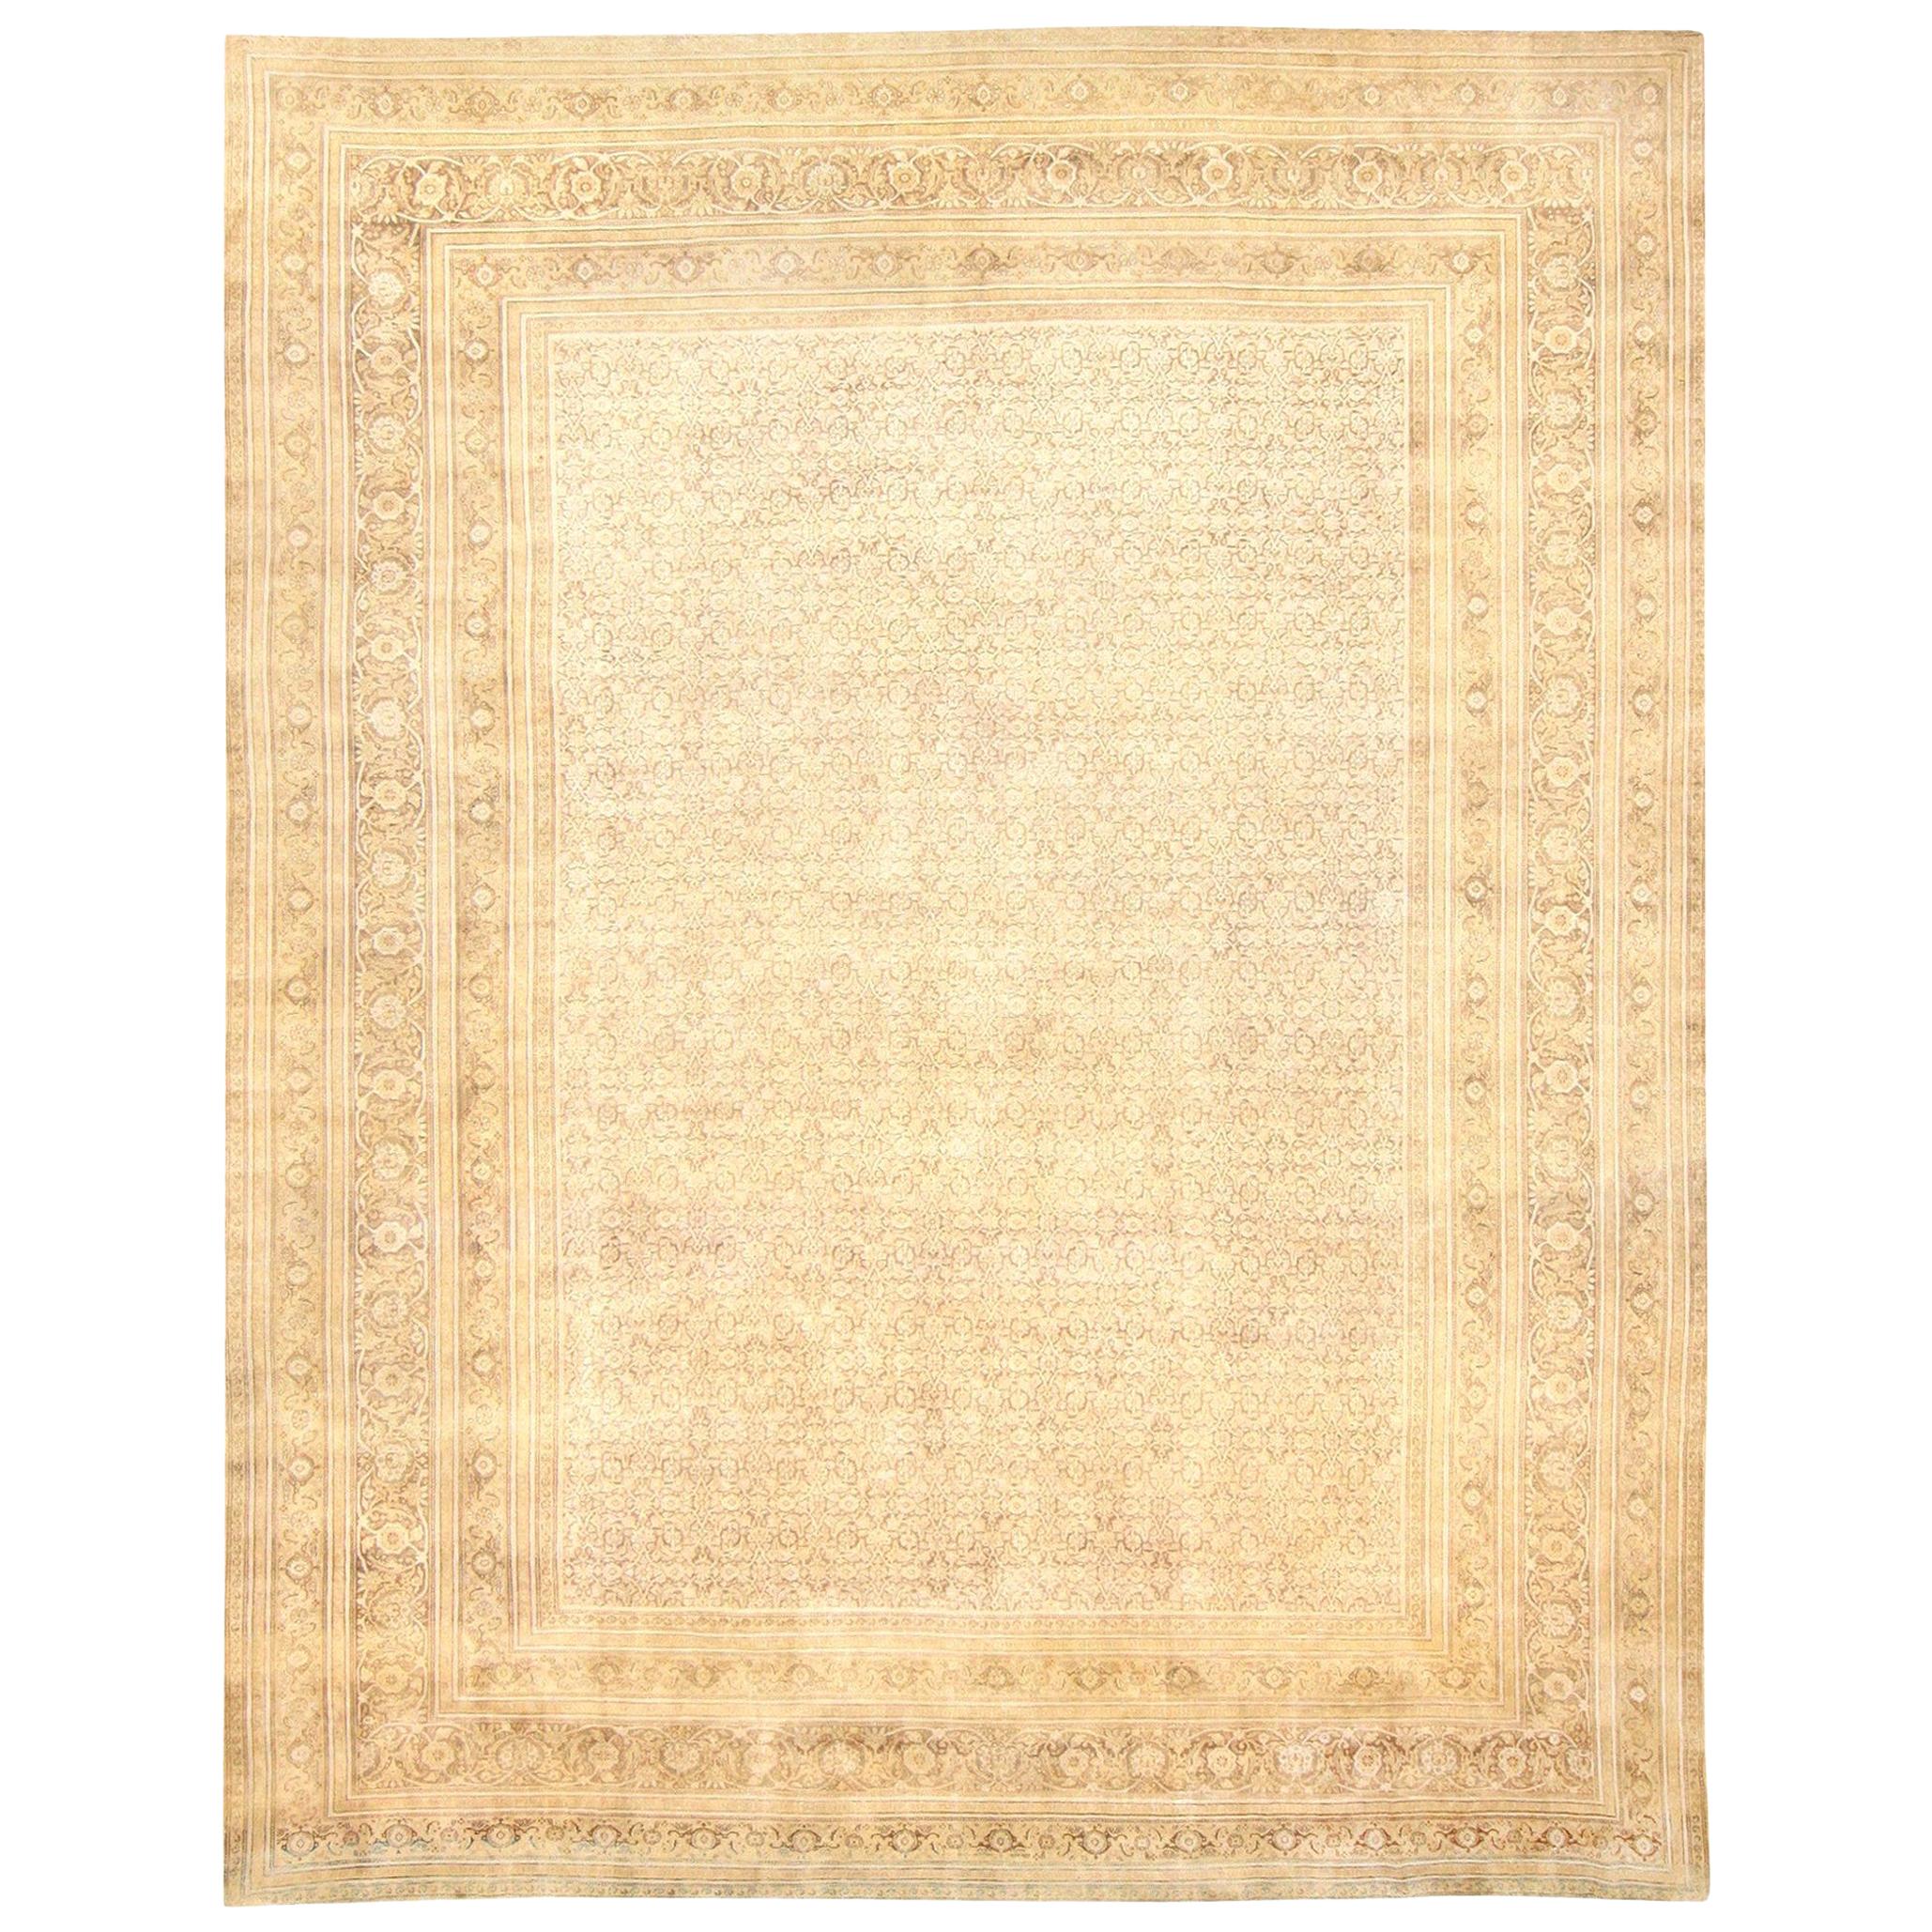 Antique Persian Tabriz Carpet. Size: 13' 7" x 16' 7"  For Sale